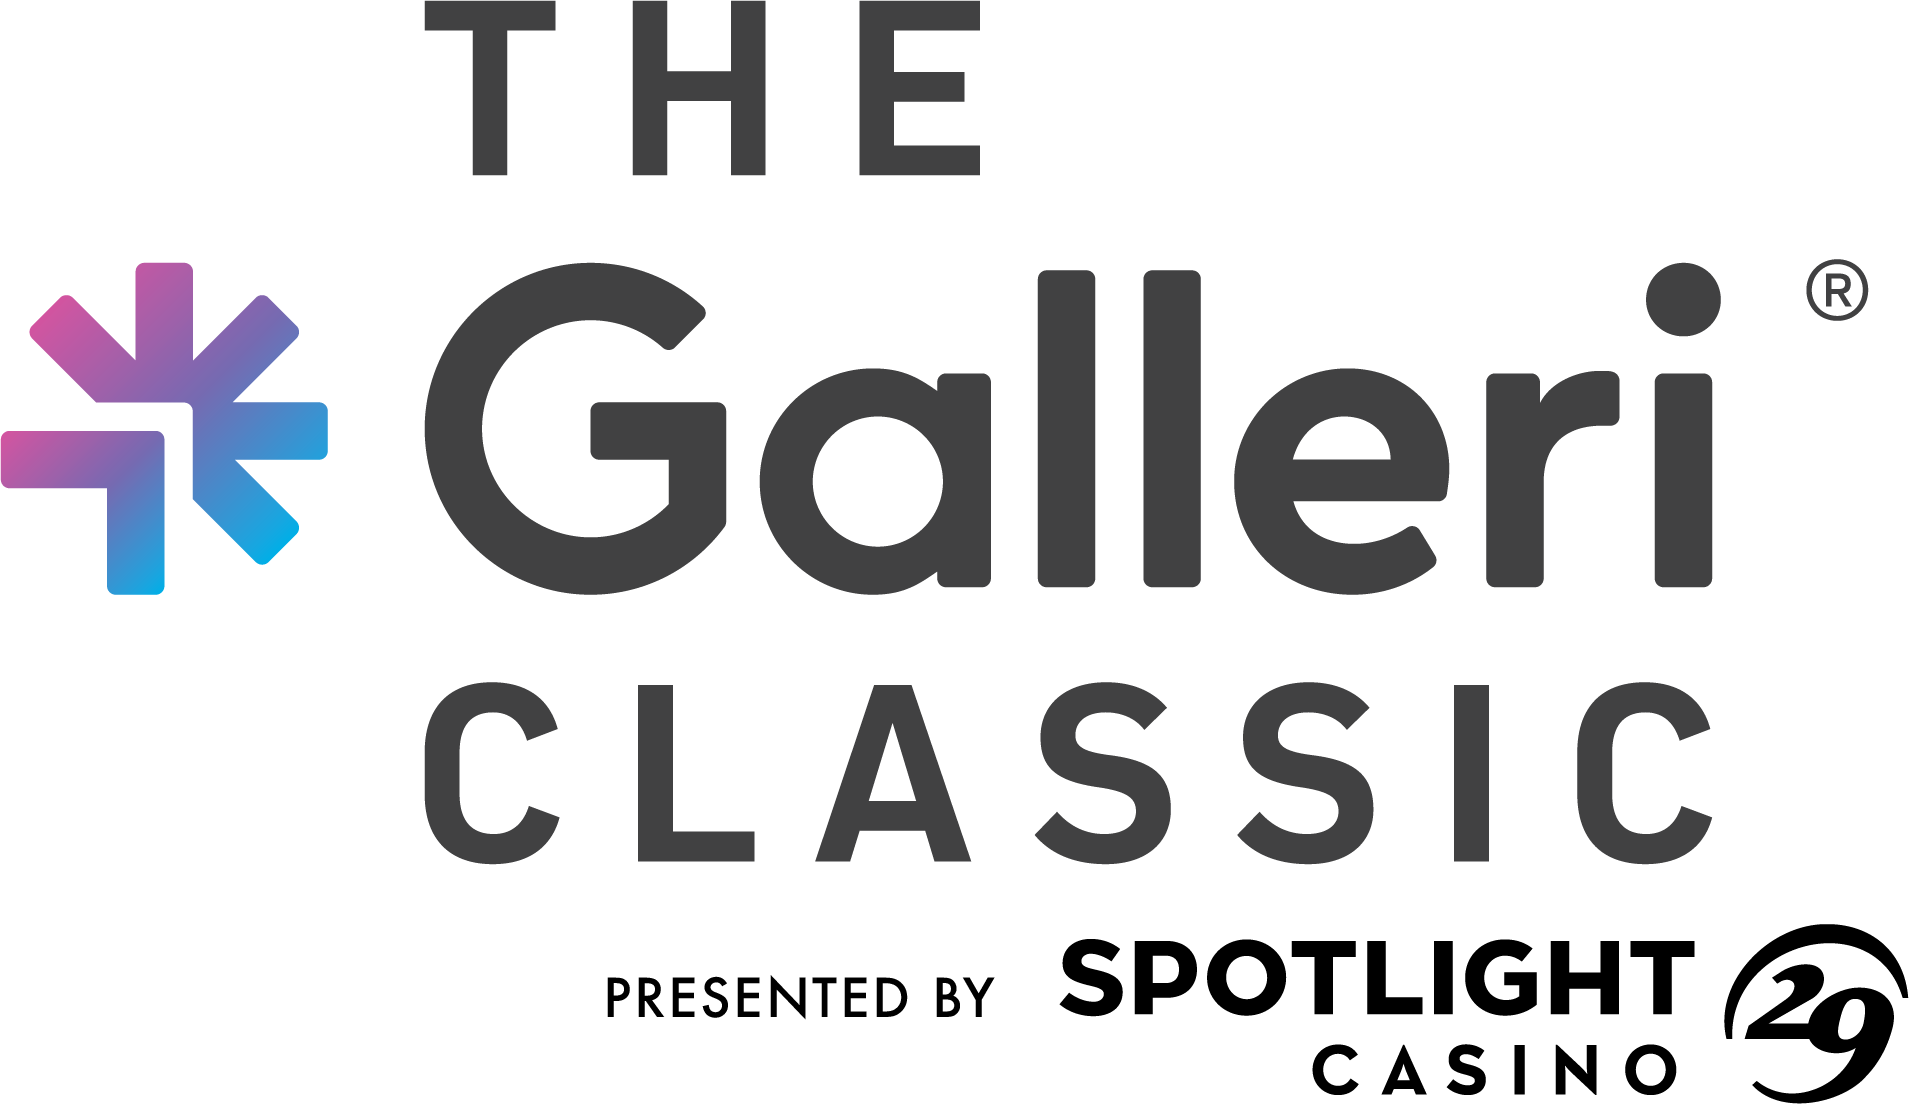 The Galleri Classic